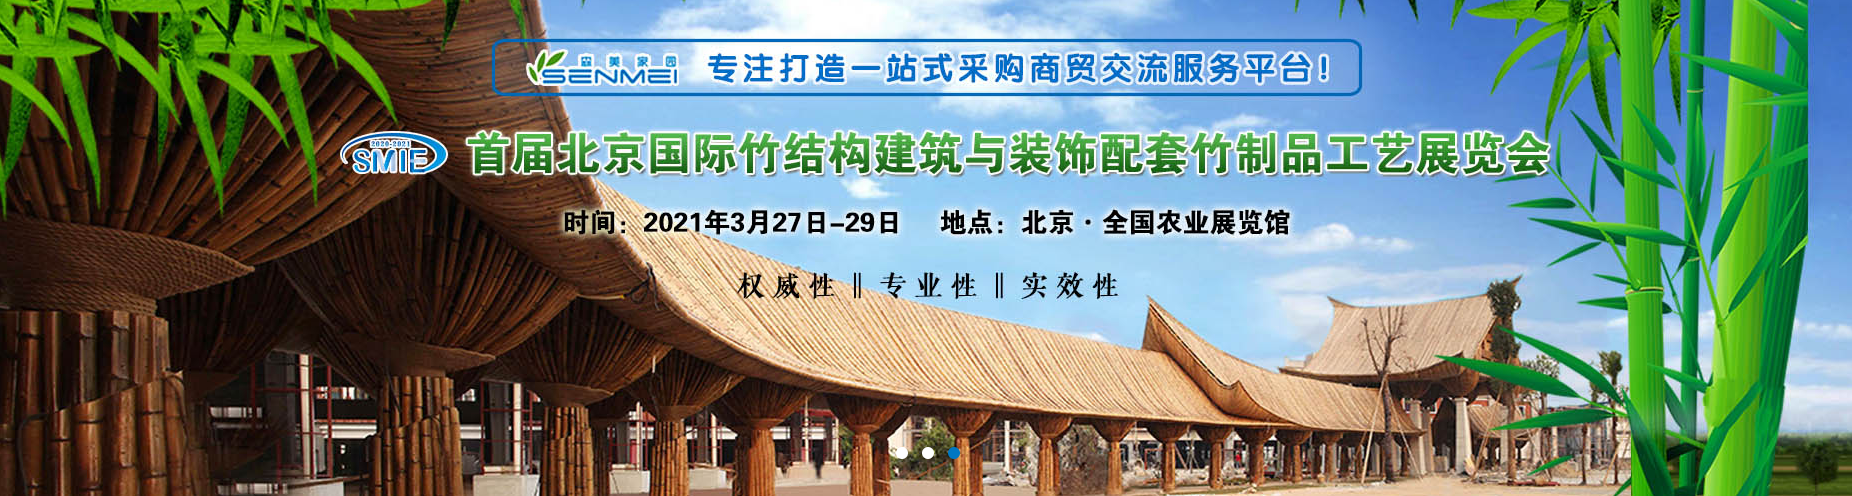 北京民宿展主办方-2021北京竹结构建筑与装饰配套竹制品工艺展览会